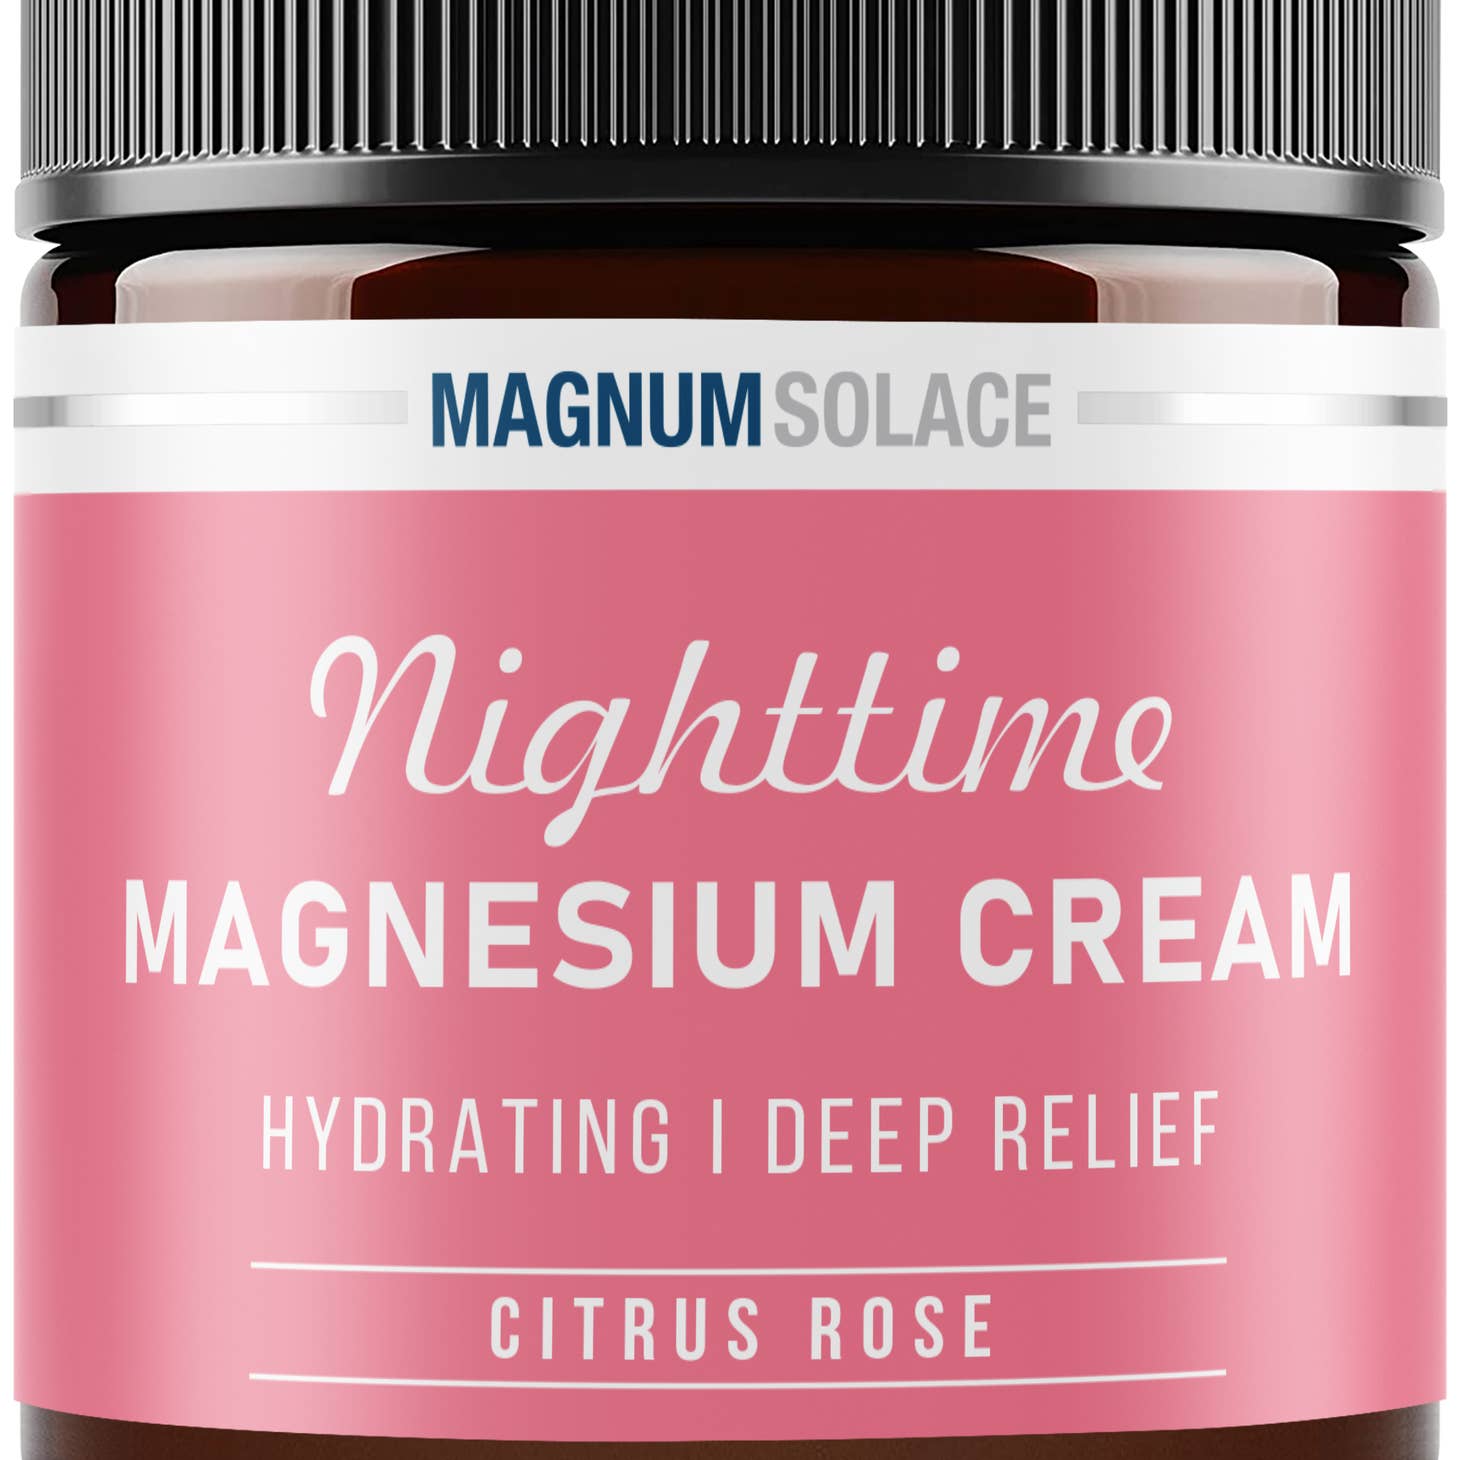 Magnum Solace - Nighttime Magnesium Cream